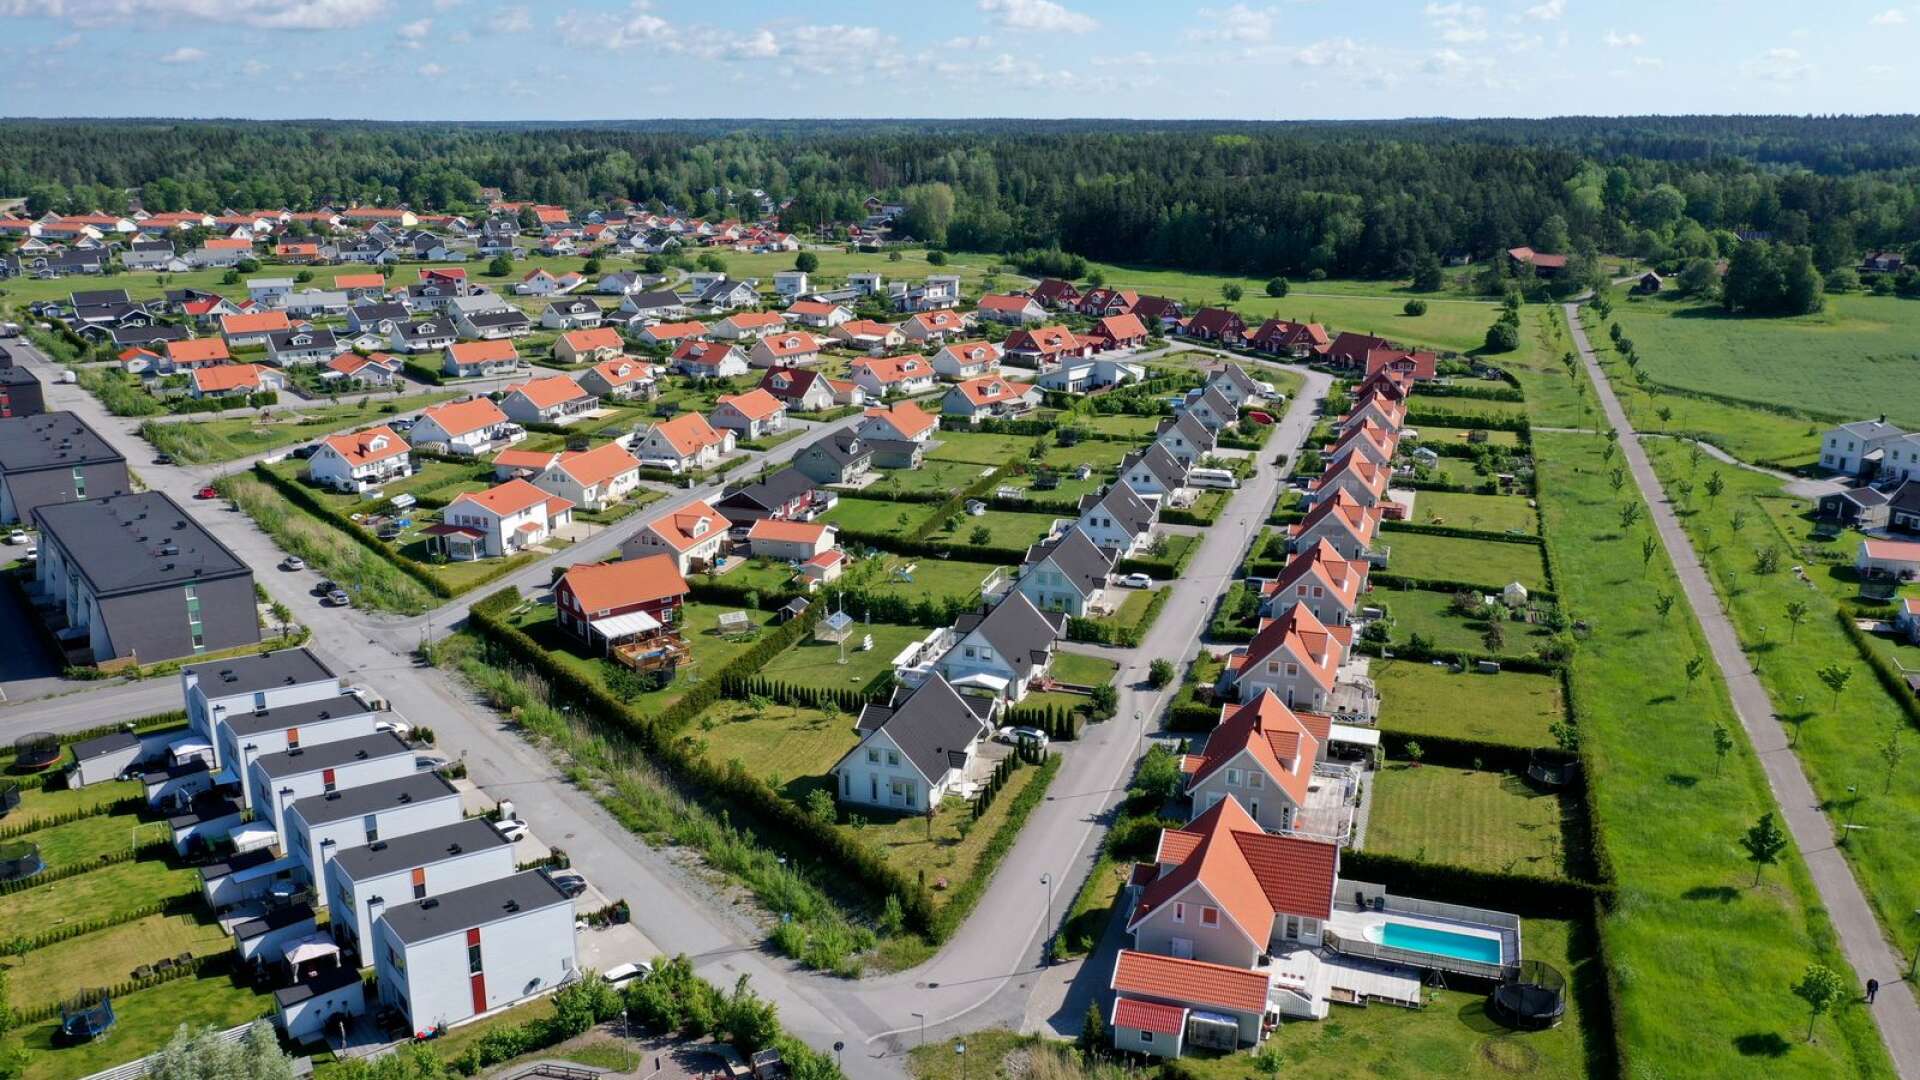 Ett aktuellt problem är att vissa kommuner vill få bort exempelvis stadsnära livsmedels- och spannmålsanläggningar för att göra plats åt exklusiva bostadsprojekt, skriver Per Lindahl och Palle Borgström.